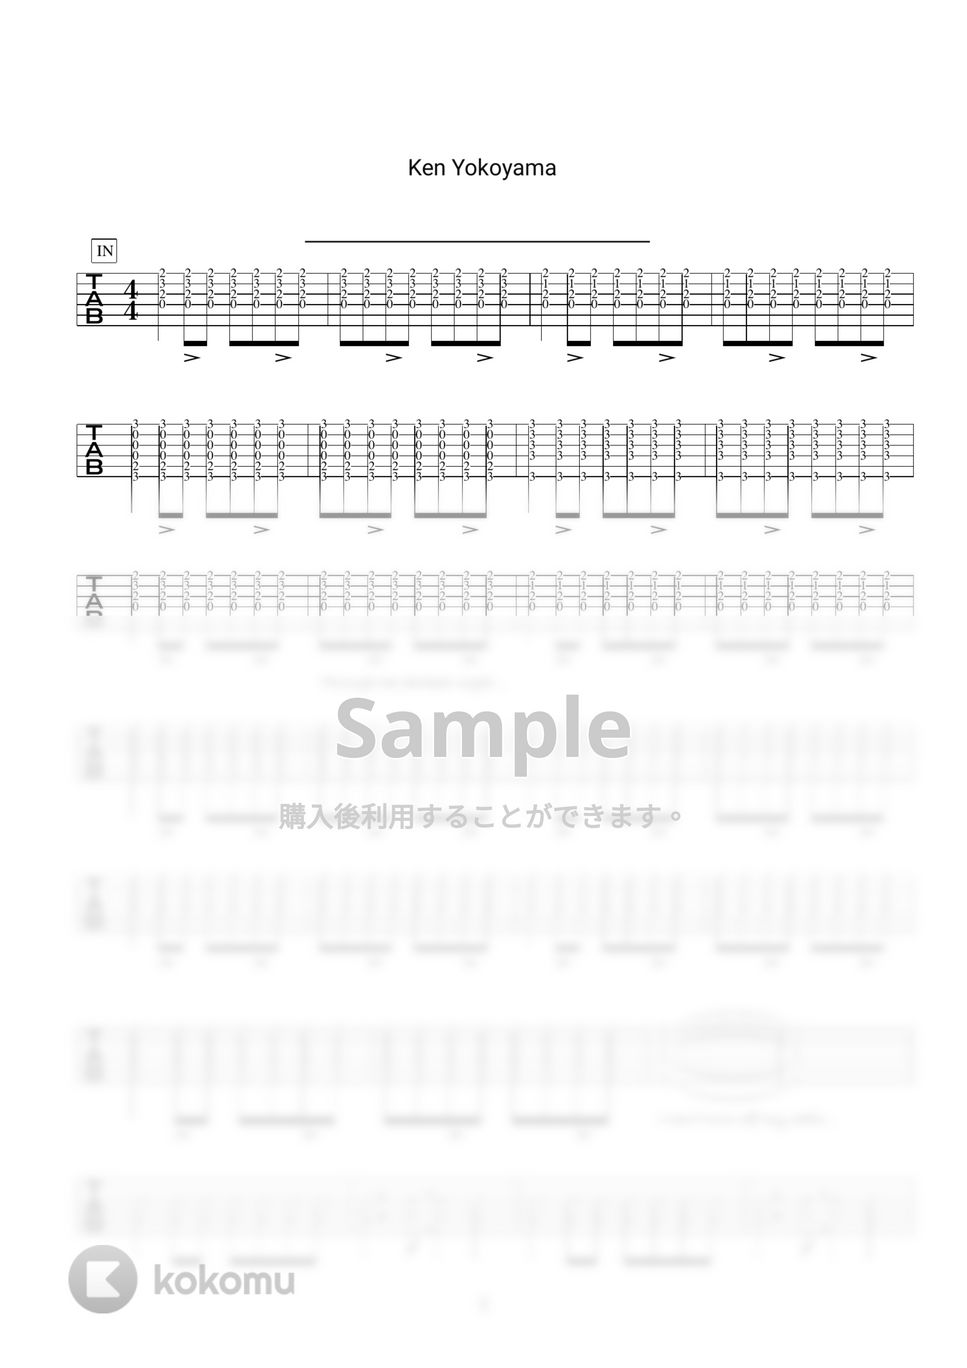 ken yokoyama - ken yokoyama人気曲3セット ギター演奏動画付TAB譜 by バイトーン音楽教室